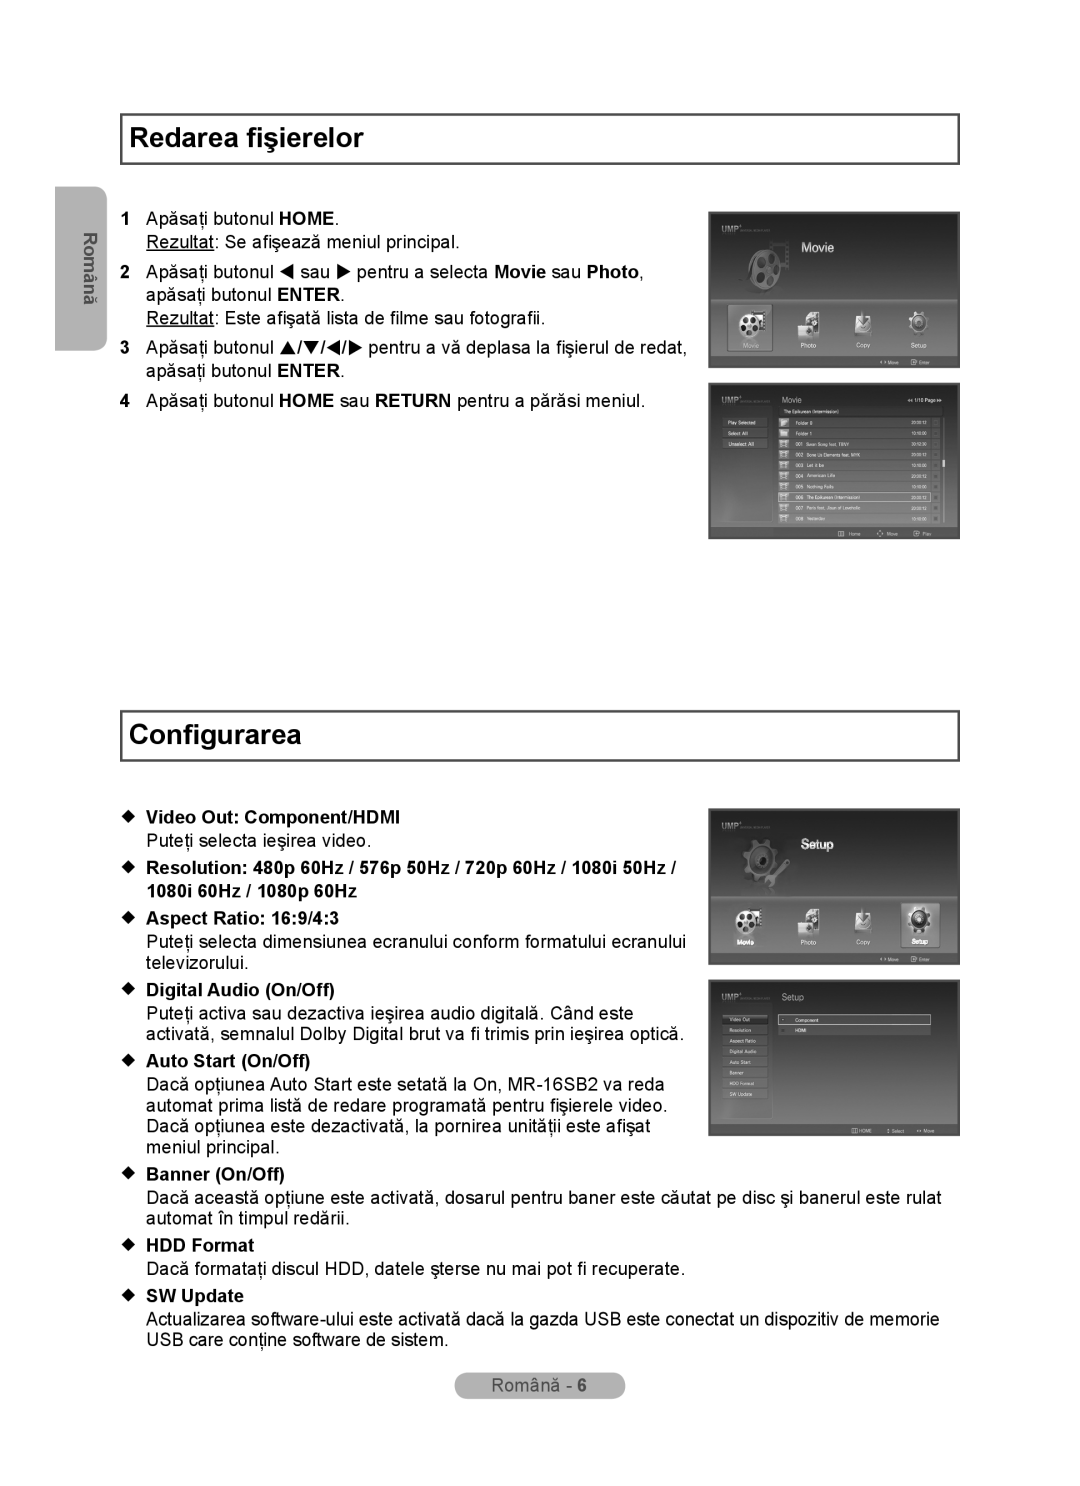 Samsung MR-16SB2 Redarea fişierelor, Configurarea,  Aspect Ratio 169/43, Română,  Video Out Component/HDMI,  HDD Format 